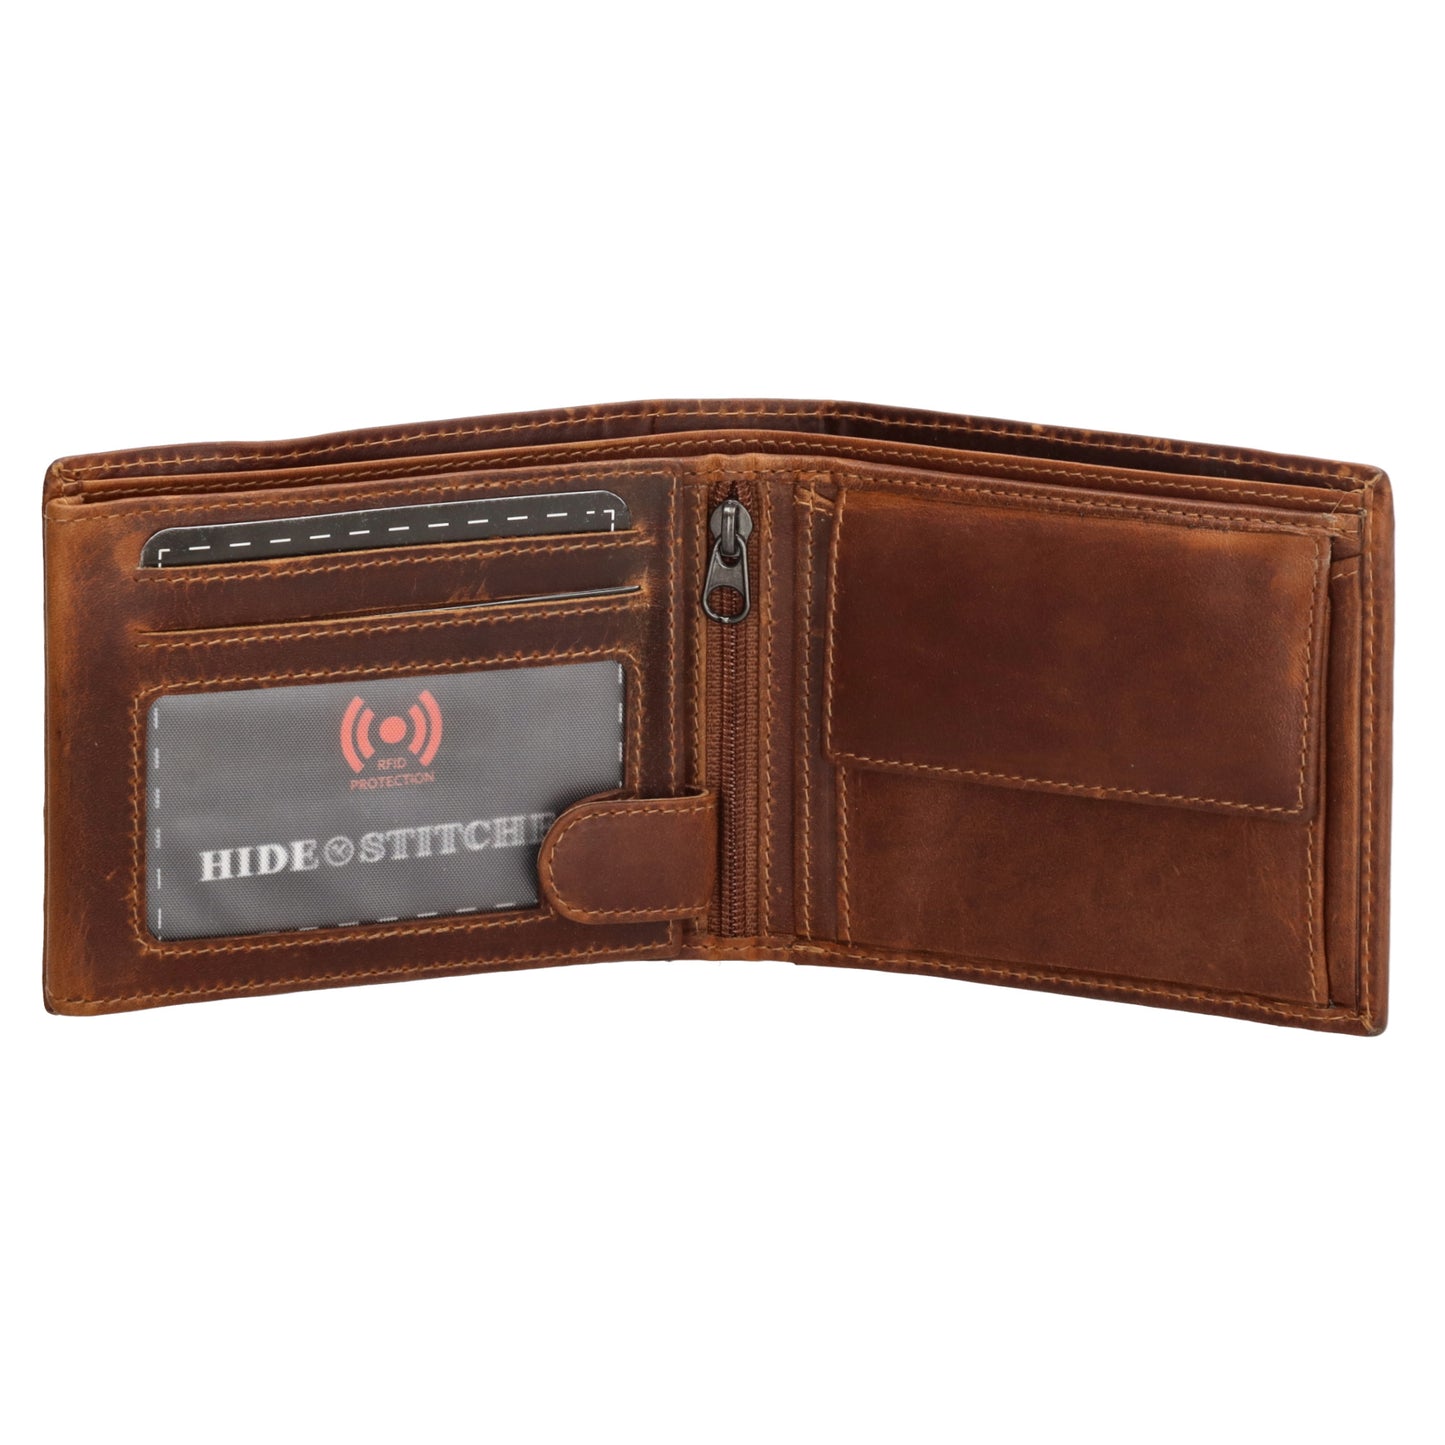 Geldbörse Querformat 9x11cm mit Reißverschluss in Cognac aus Leder